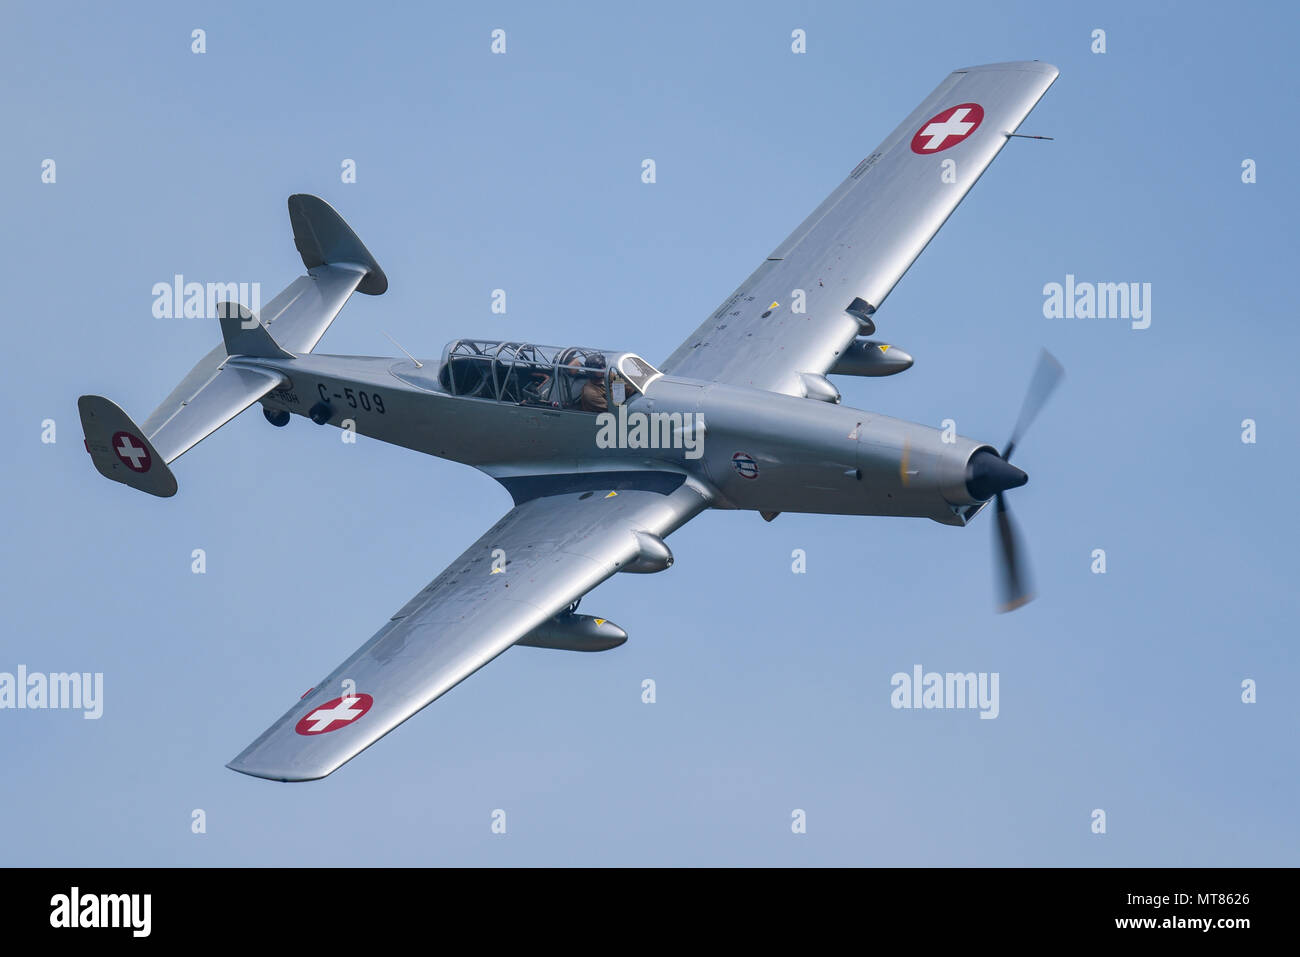 Farner Werke F+W C-3605, soprannominato Schlepp ("Tug') o "Alpina Anteater' battenti in corrispondenza di un'esibizione aerea nel cielo blu. ex Swiss Air Force azionato da 46 Aviation Foto Stock